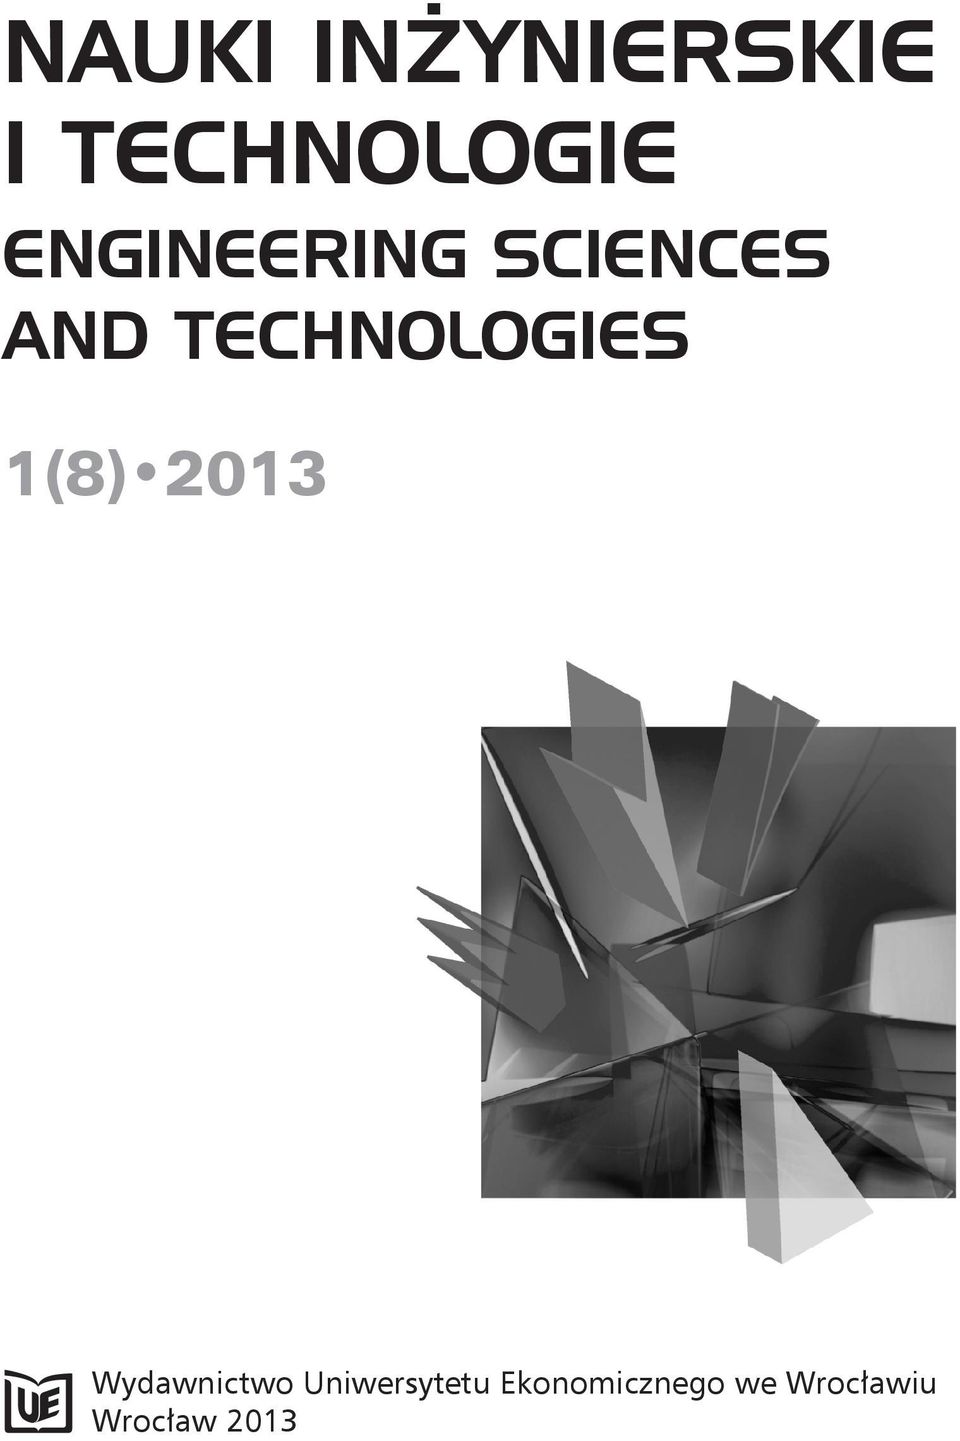 TECHNOLOGIES 1(8) 2013 Wydawnictwo